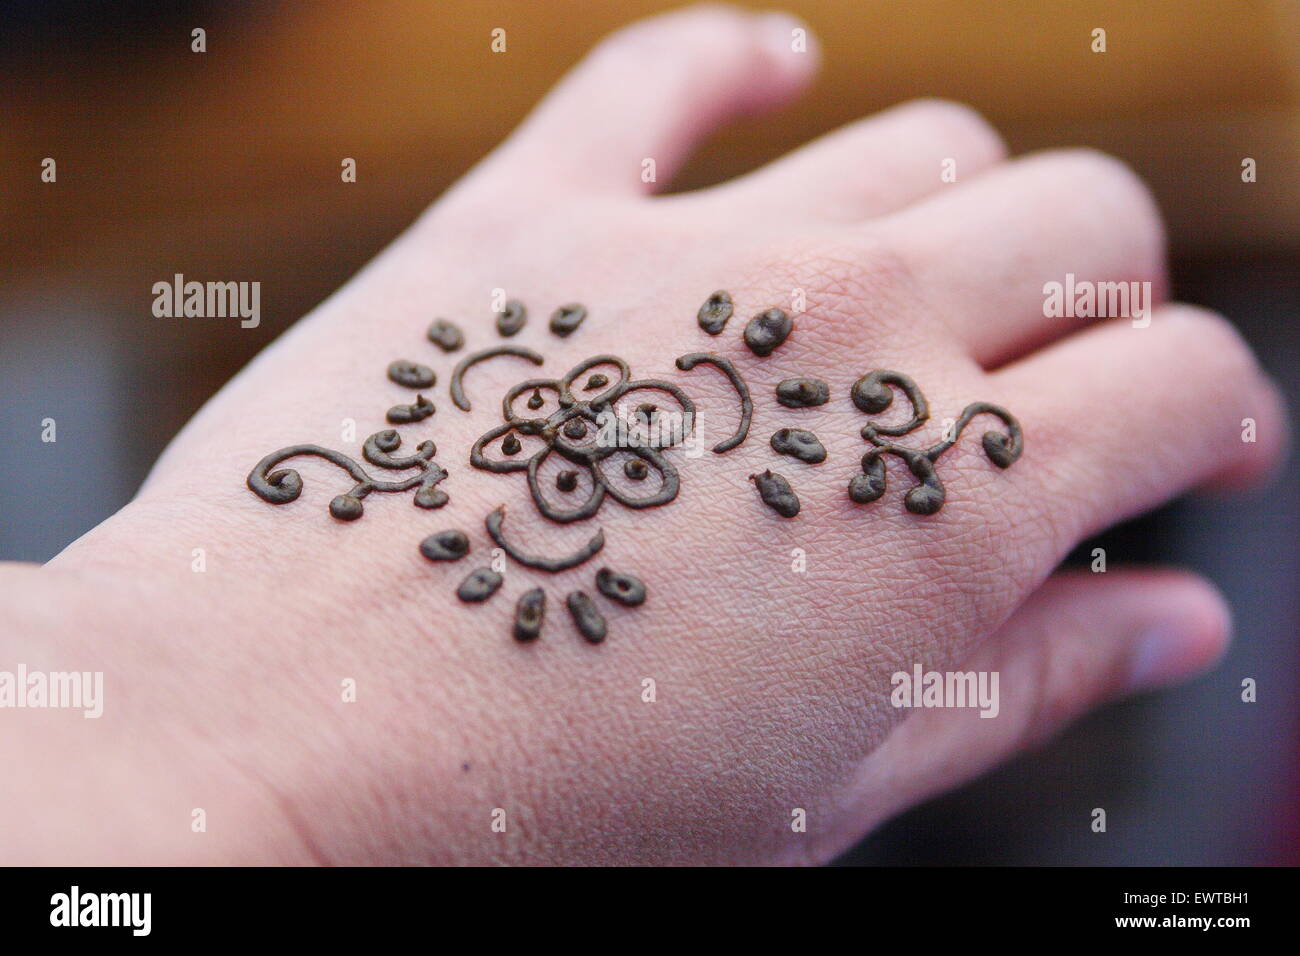 Tatouage au henné sur la main Banque D'Images